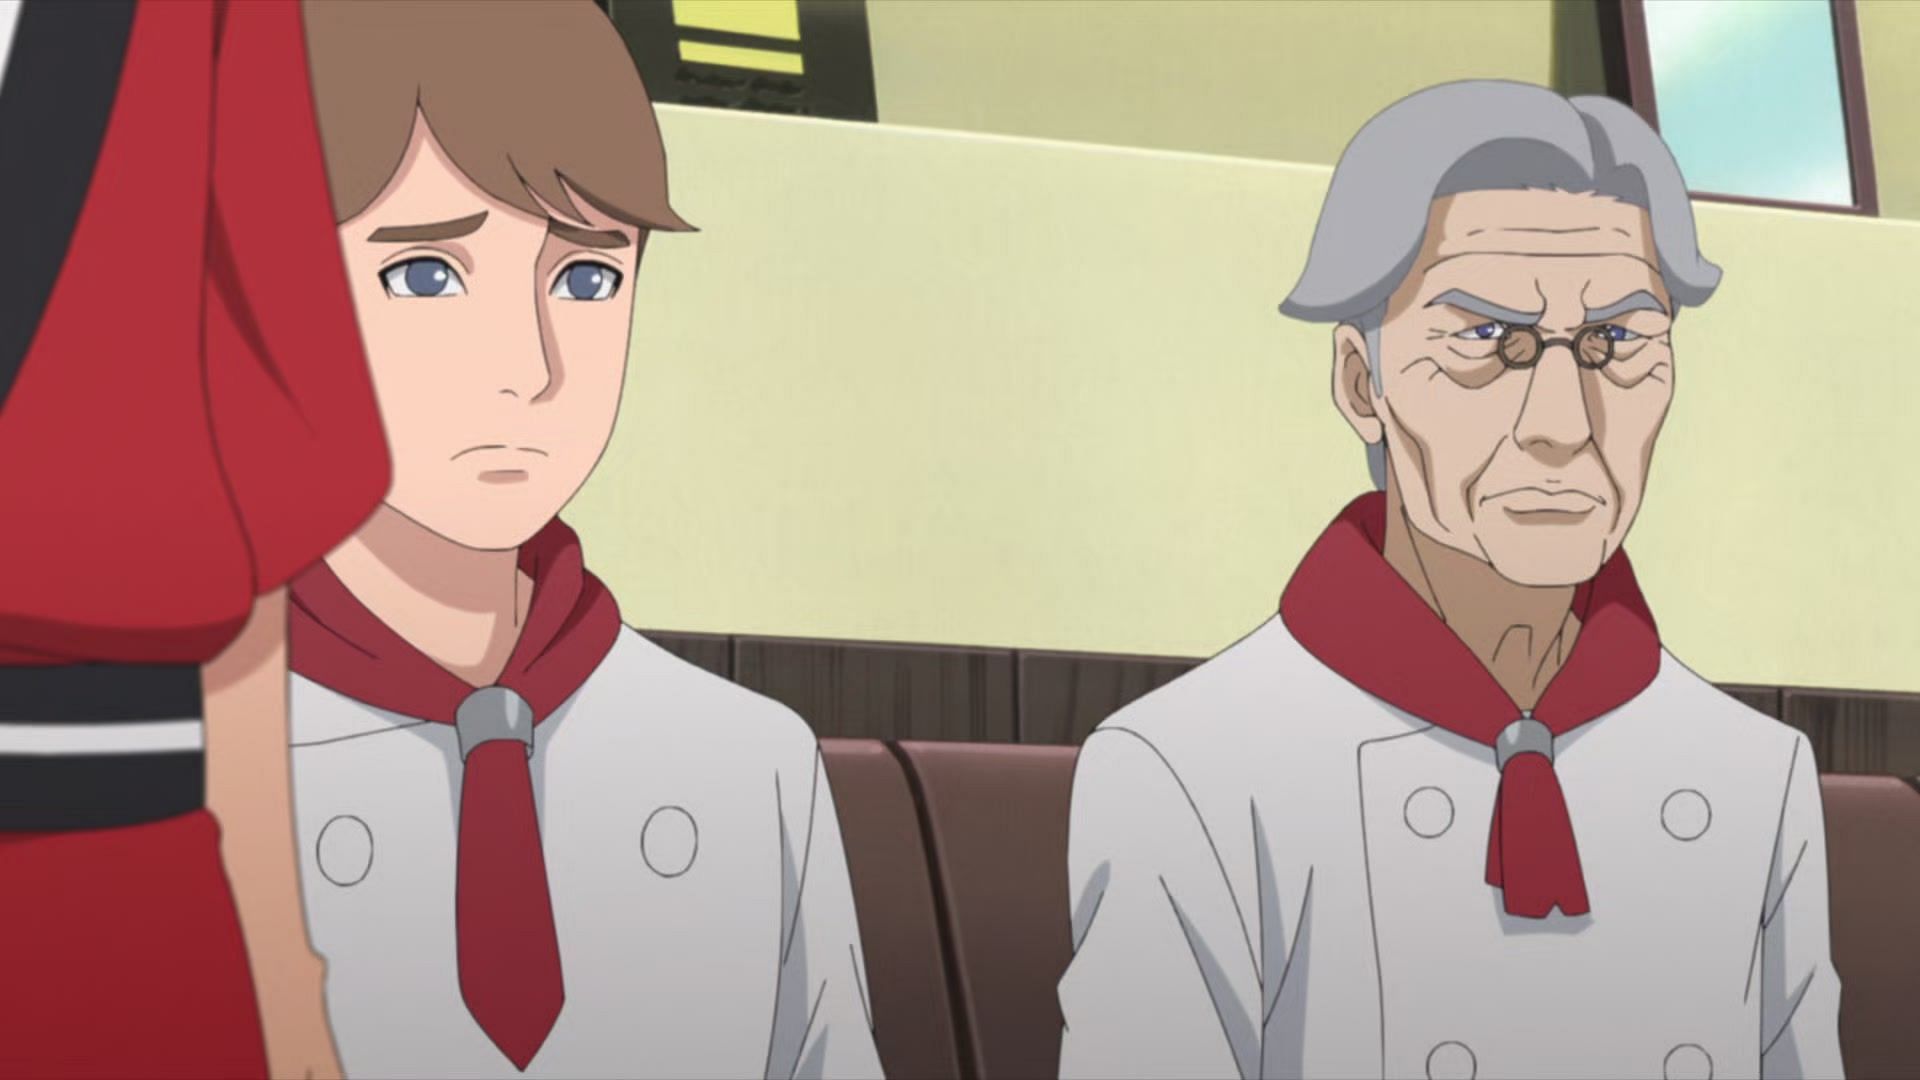 Taruto and Sabure as seen in Boruto Episode 260 (Image via Masashi Kishimoto/Shueisha, Viz Media, Boruto: Naruto Next Generations)